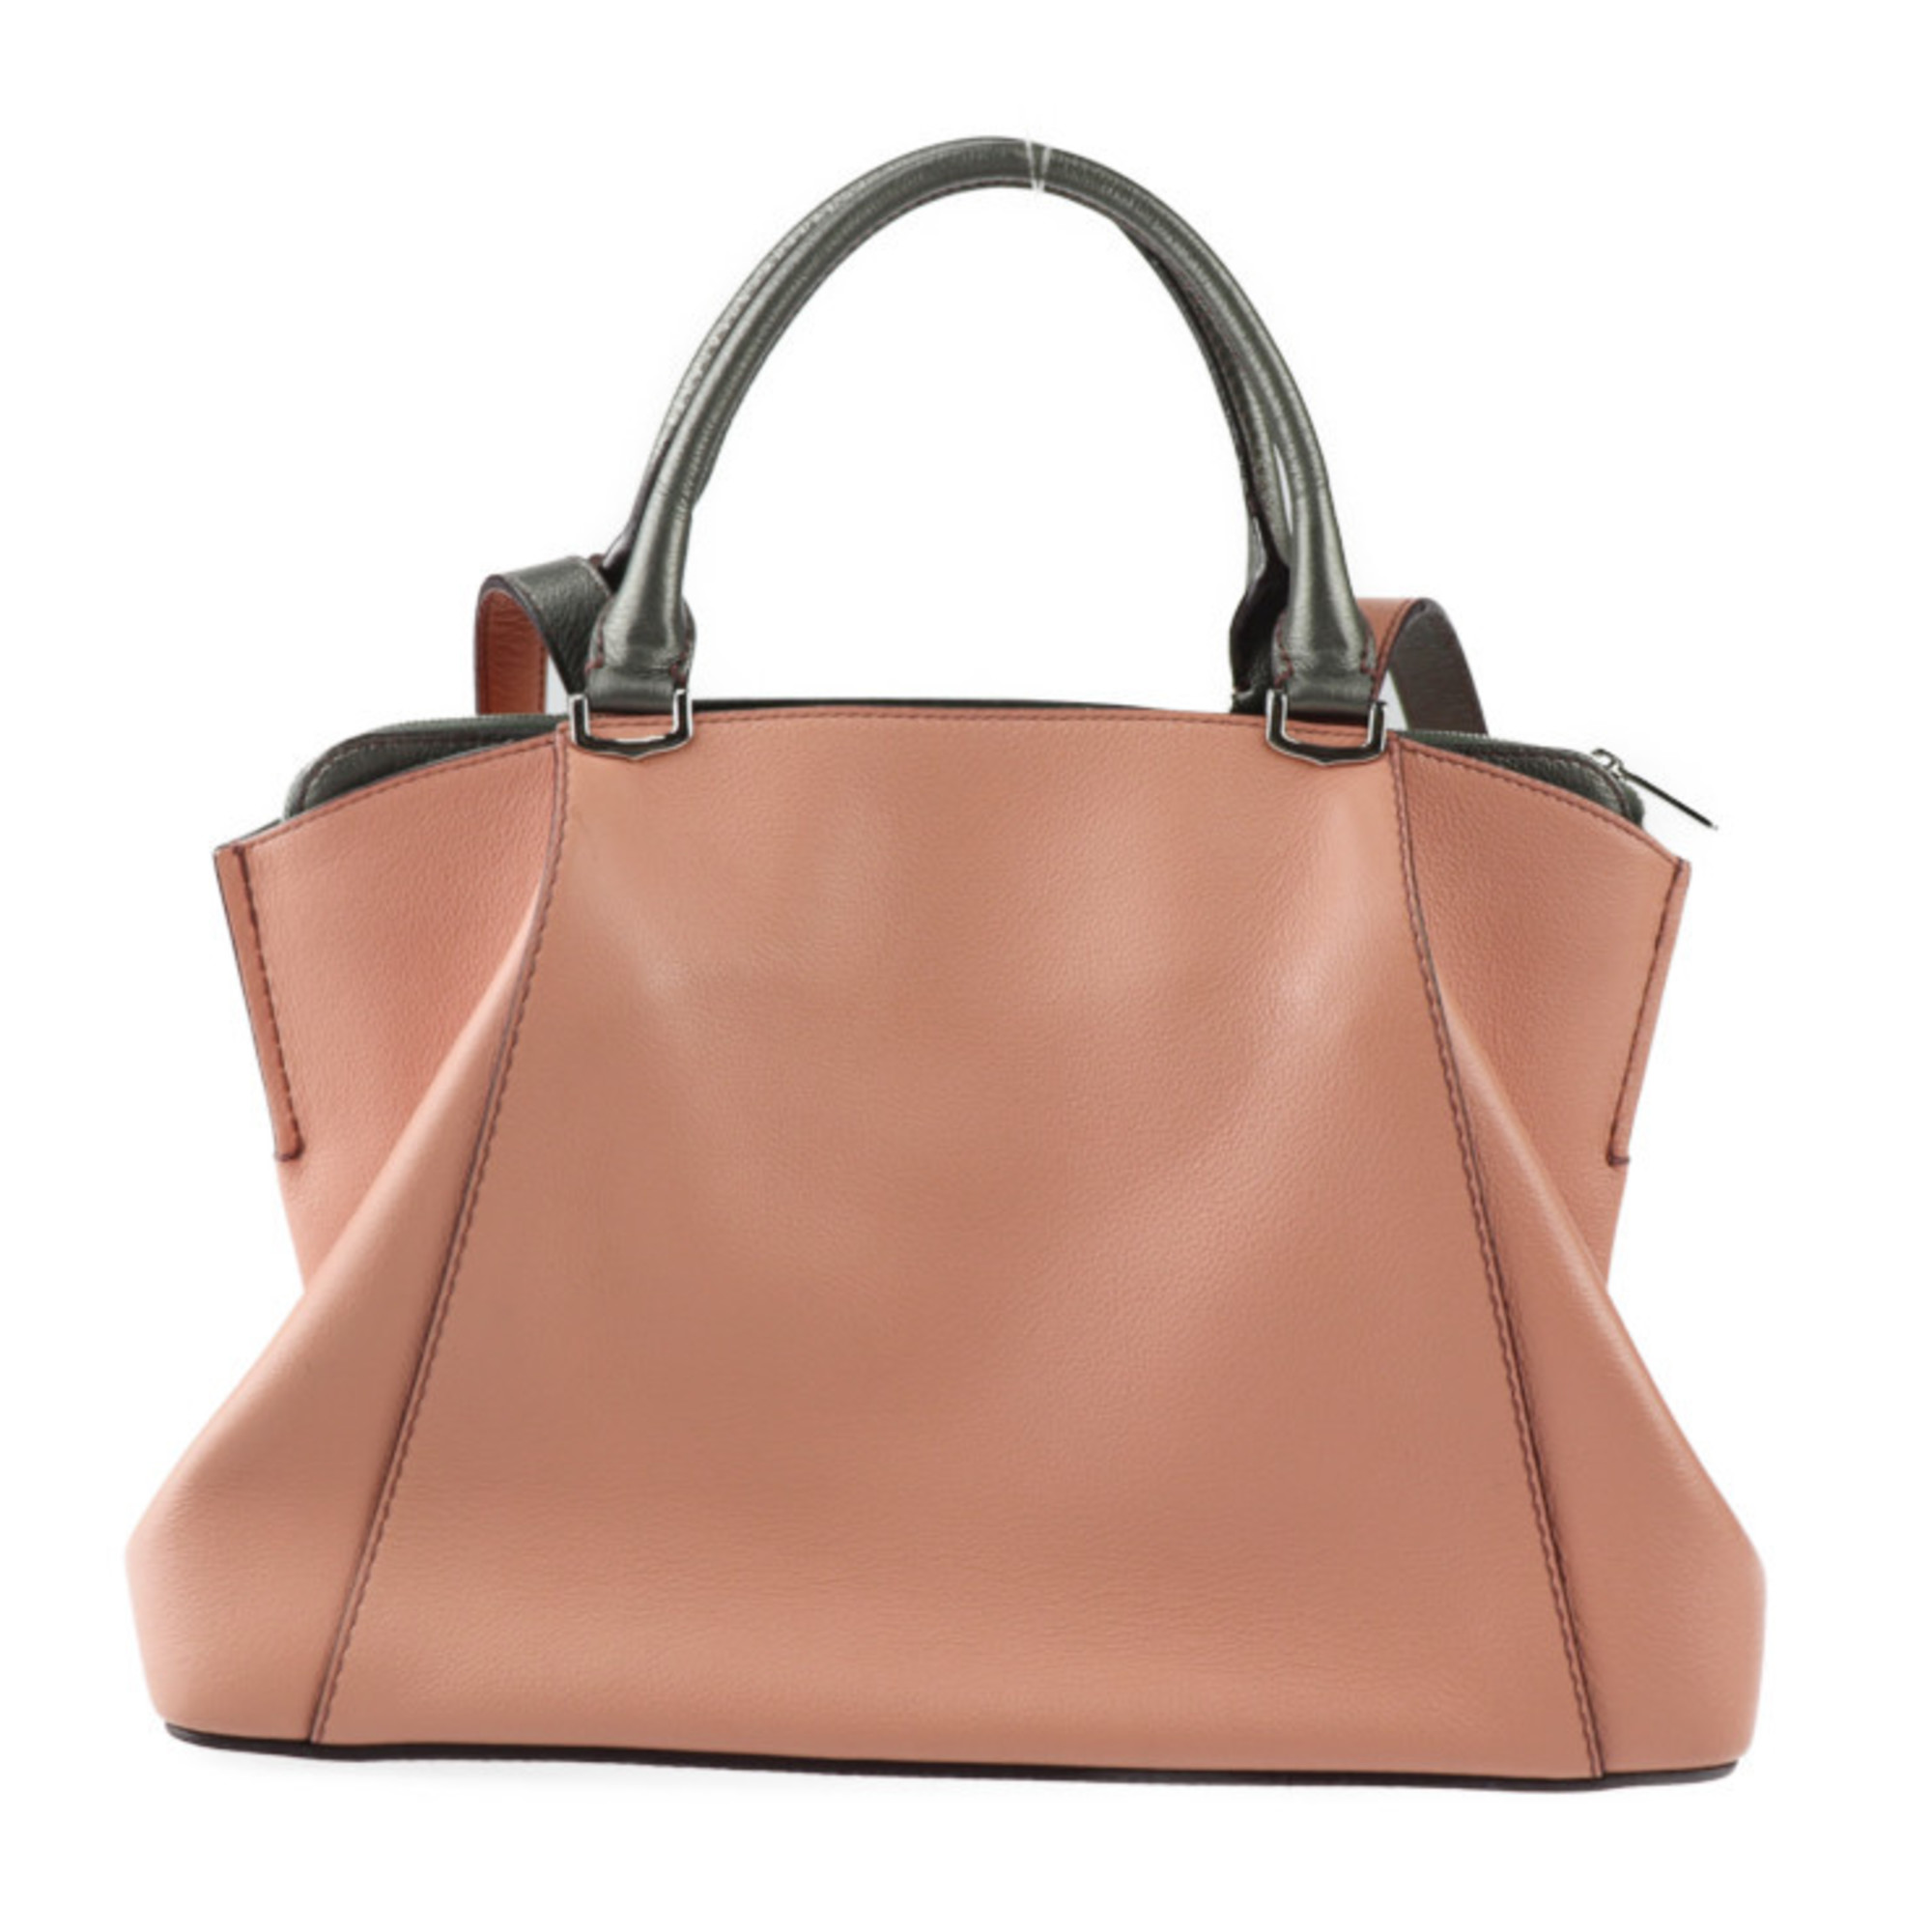 CARTIER C de Cartier SM handbag leather coral pink gunmetallic silver hardware 2WAY shoulder bag bicolor